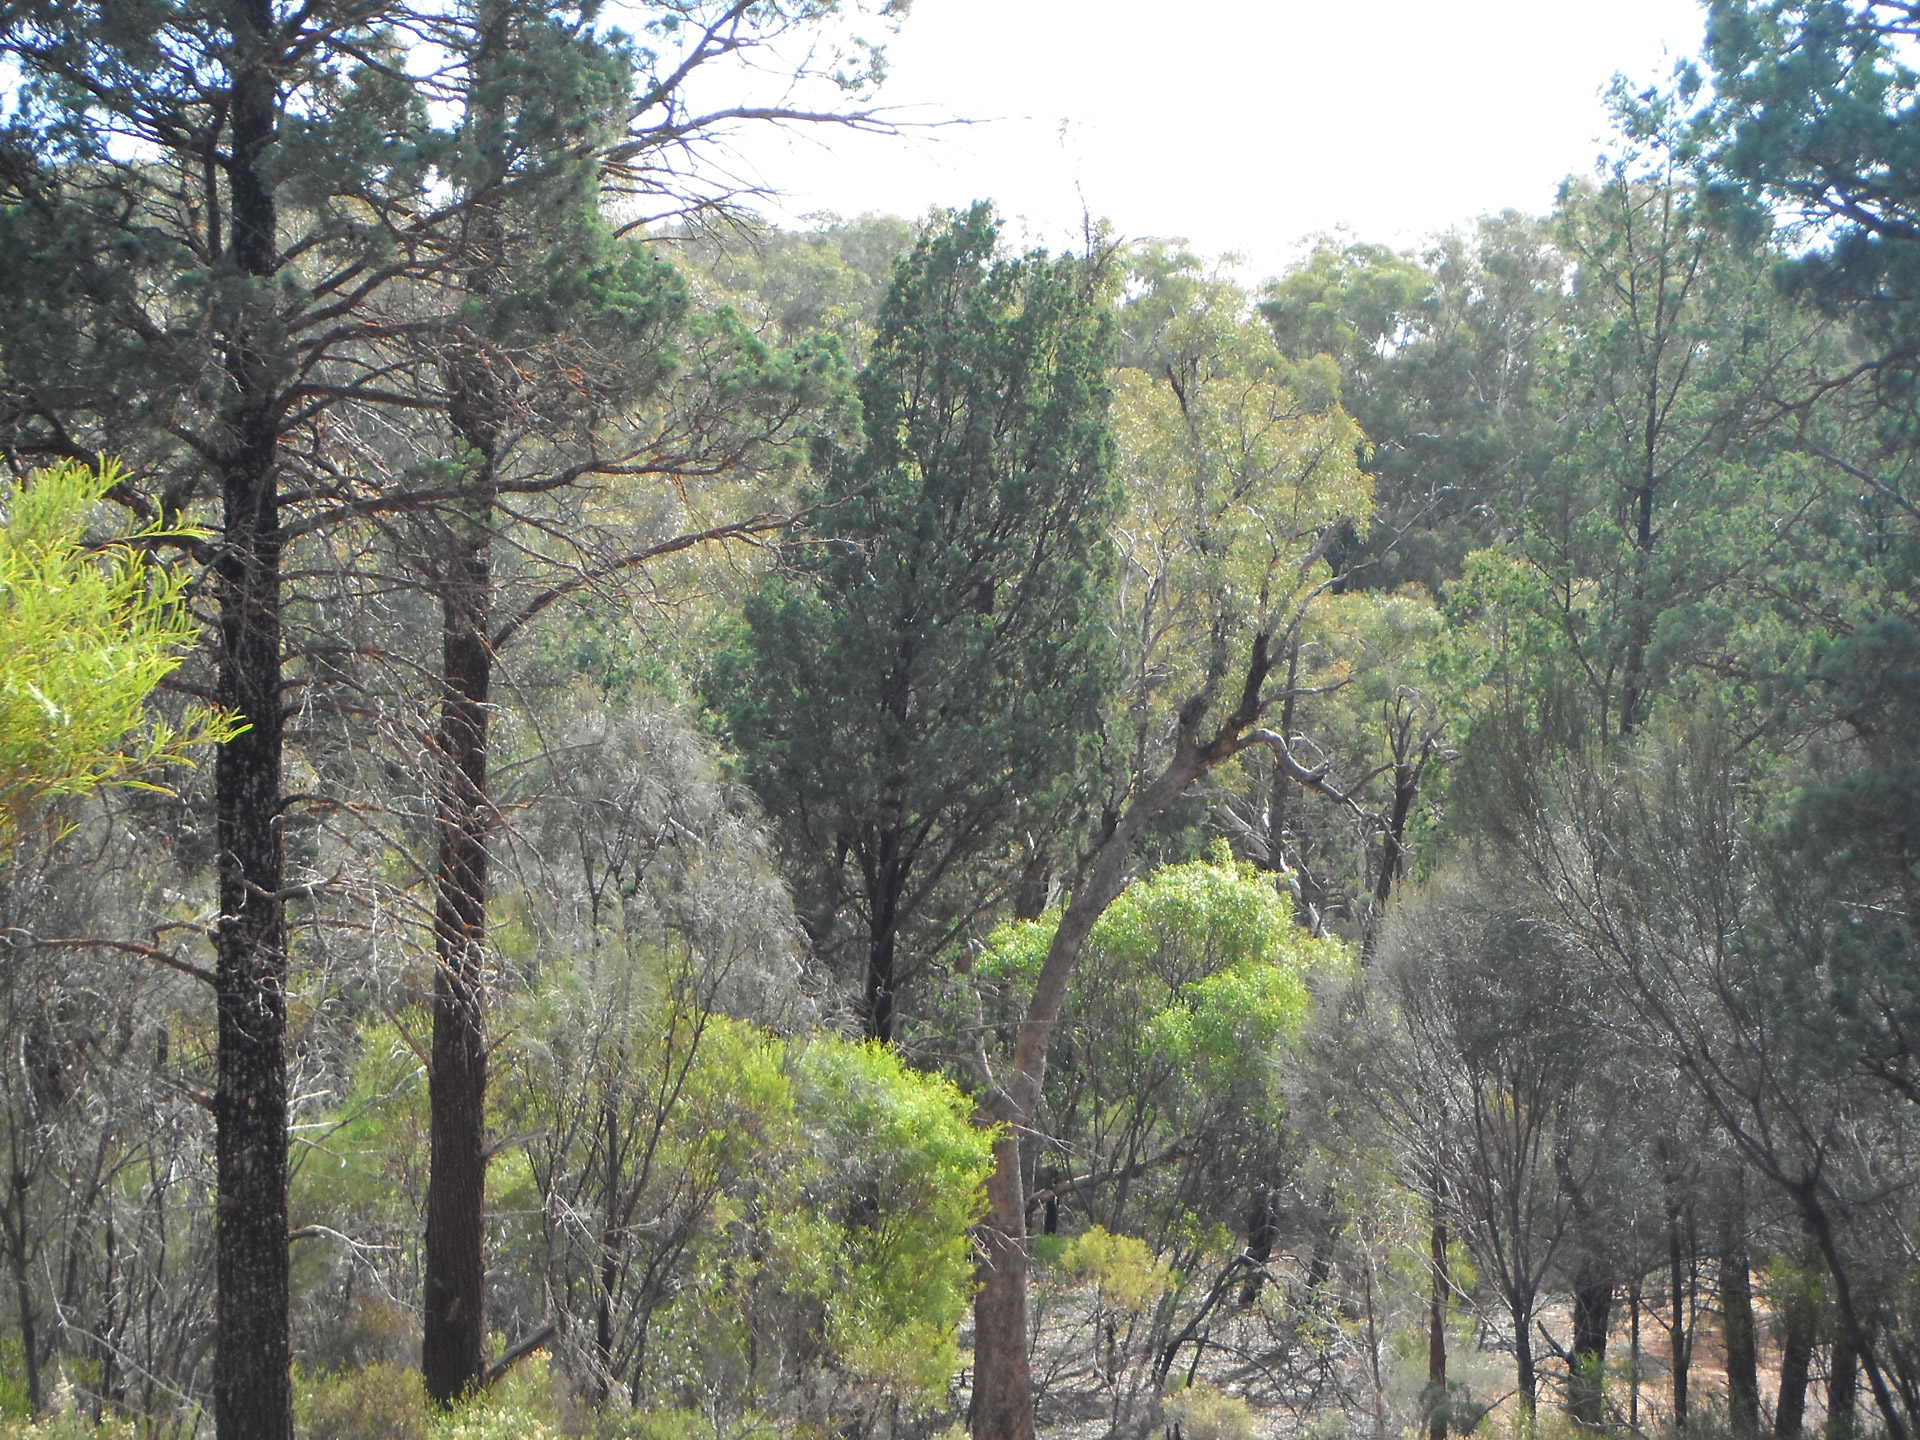 Flinder's Ranges South Australia.